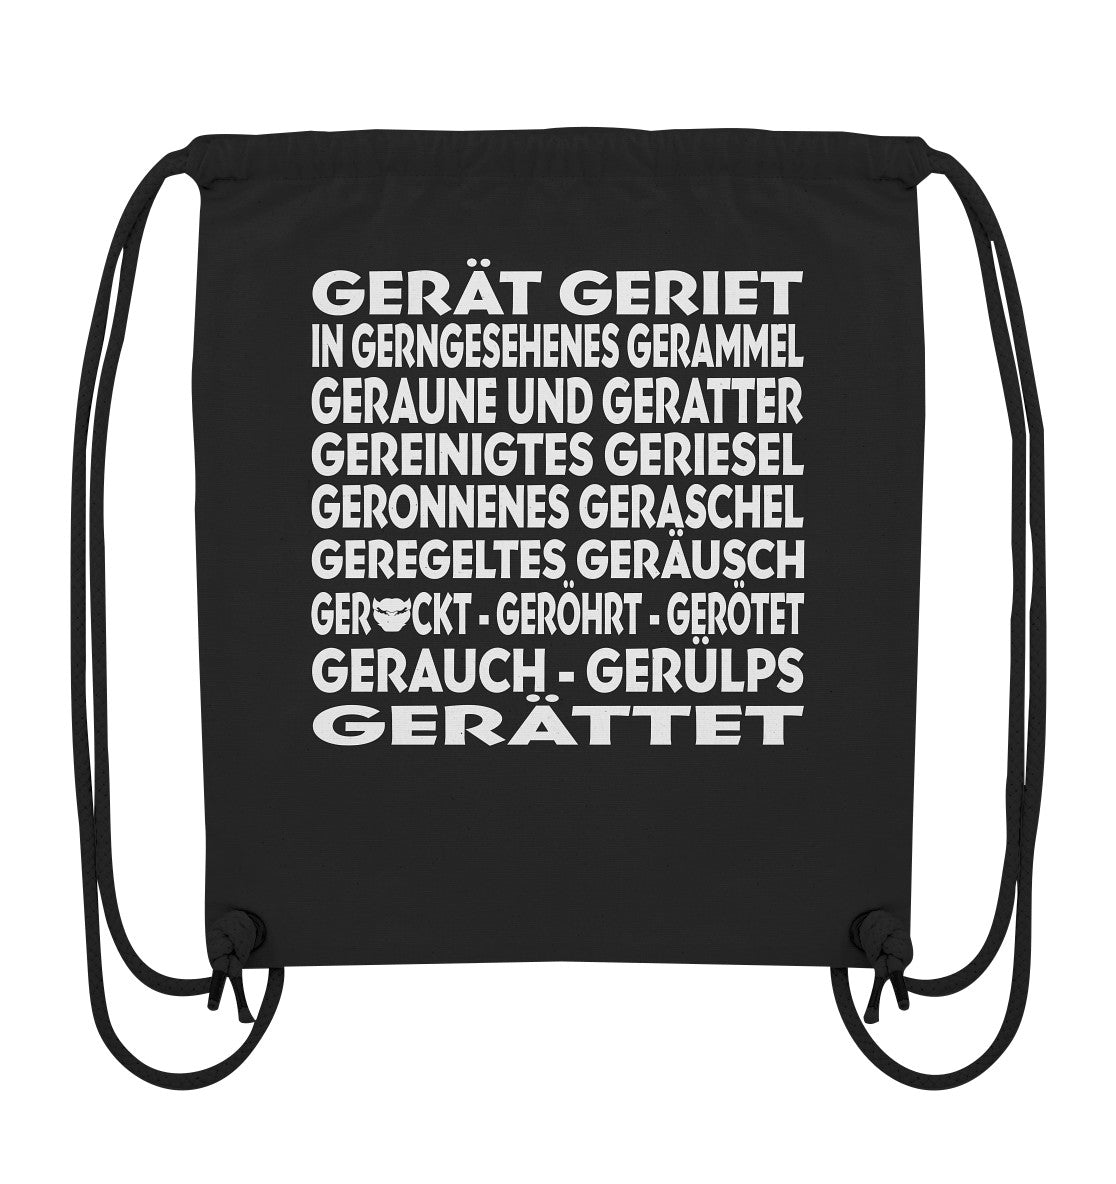 GERÄTTET - Organic Gym-Bag